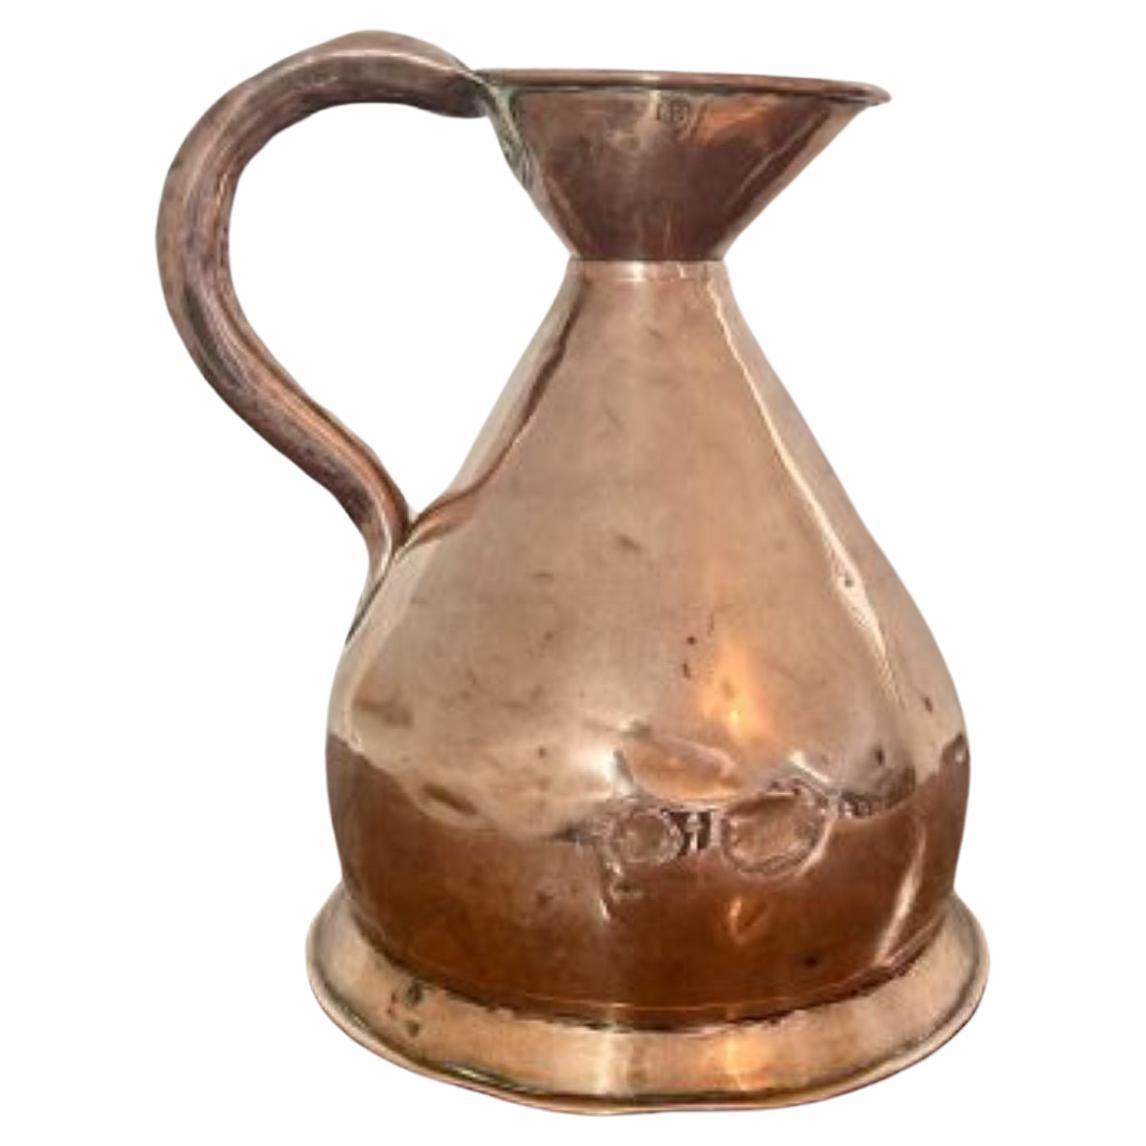 Hochwertiger antiker viktorianischer Erntekrug aus Kupfer